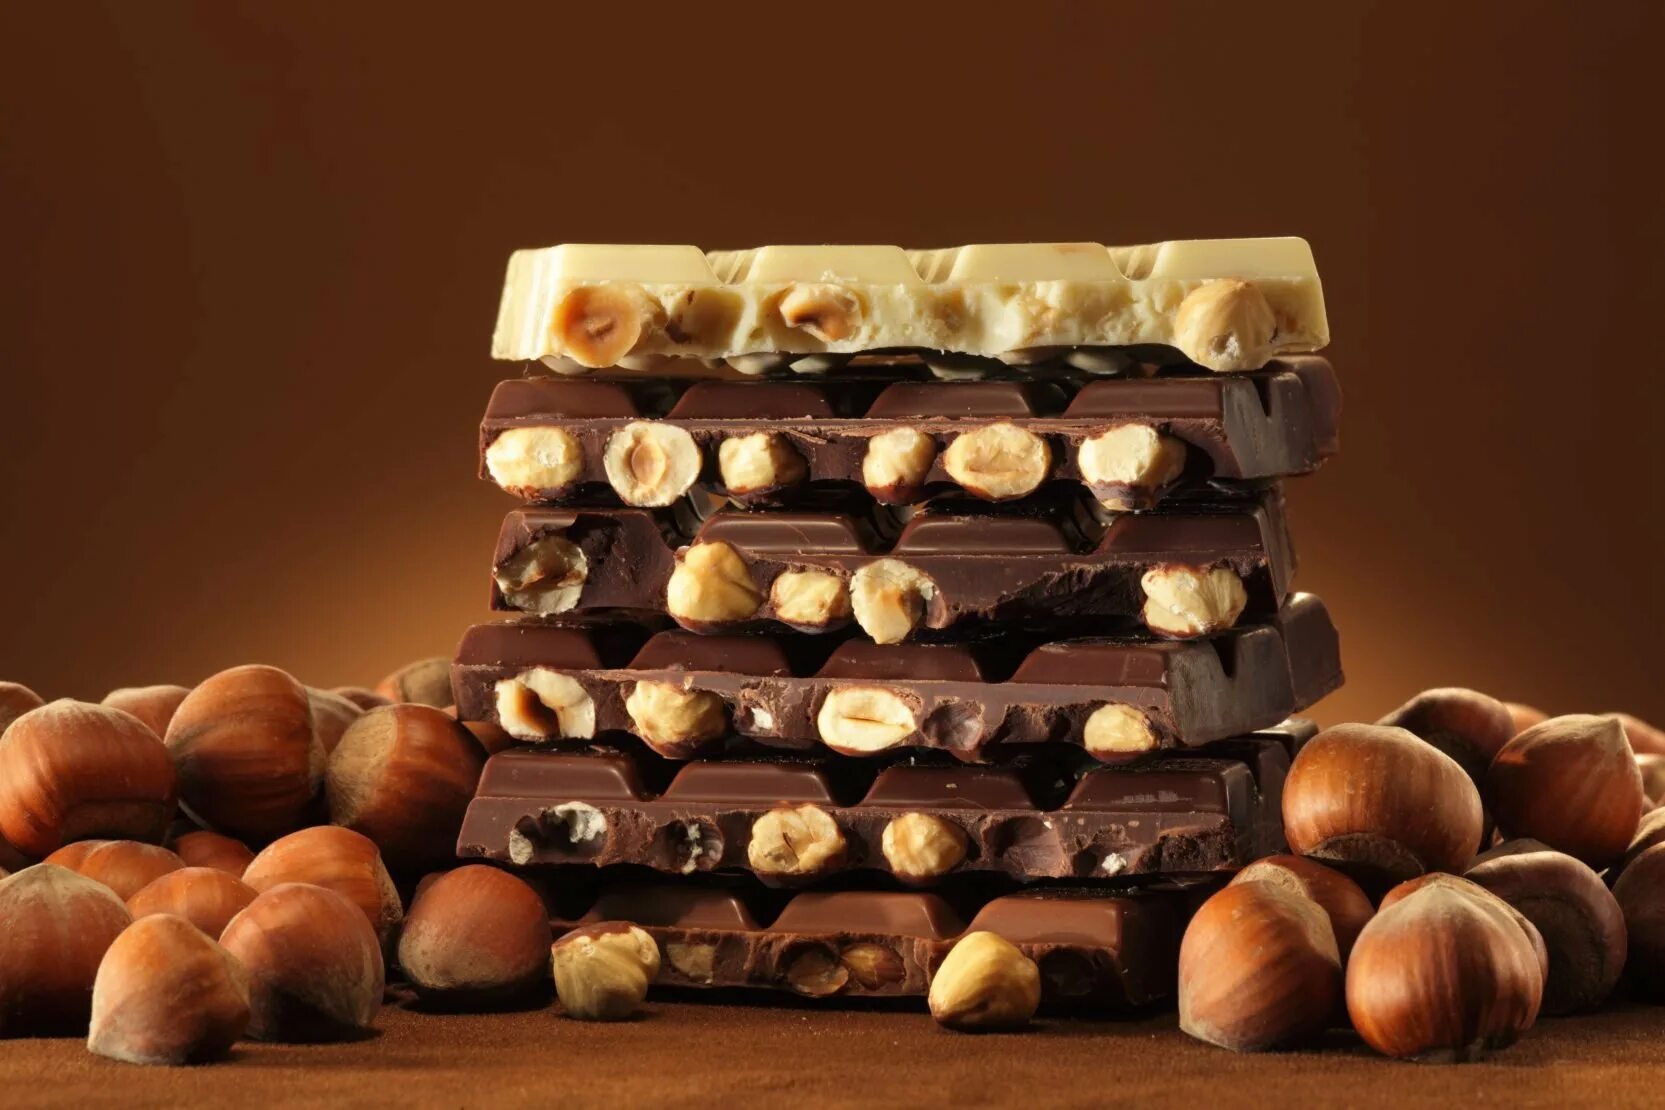 Hazelnut шоколад. Шоколад Ореховый 60 гр. Орешки в шоколаде. Шоколадка с орехами.